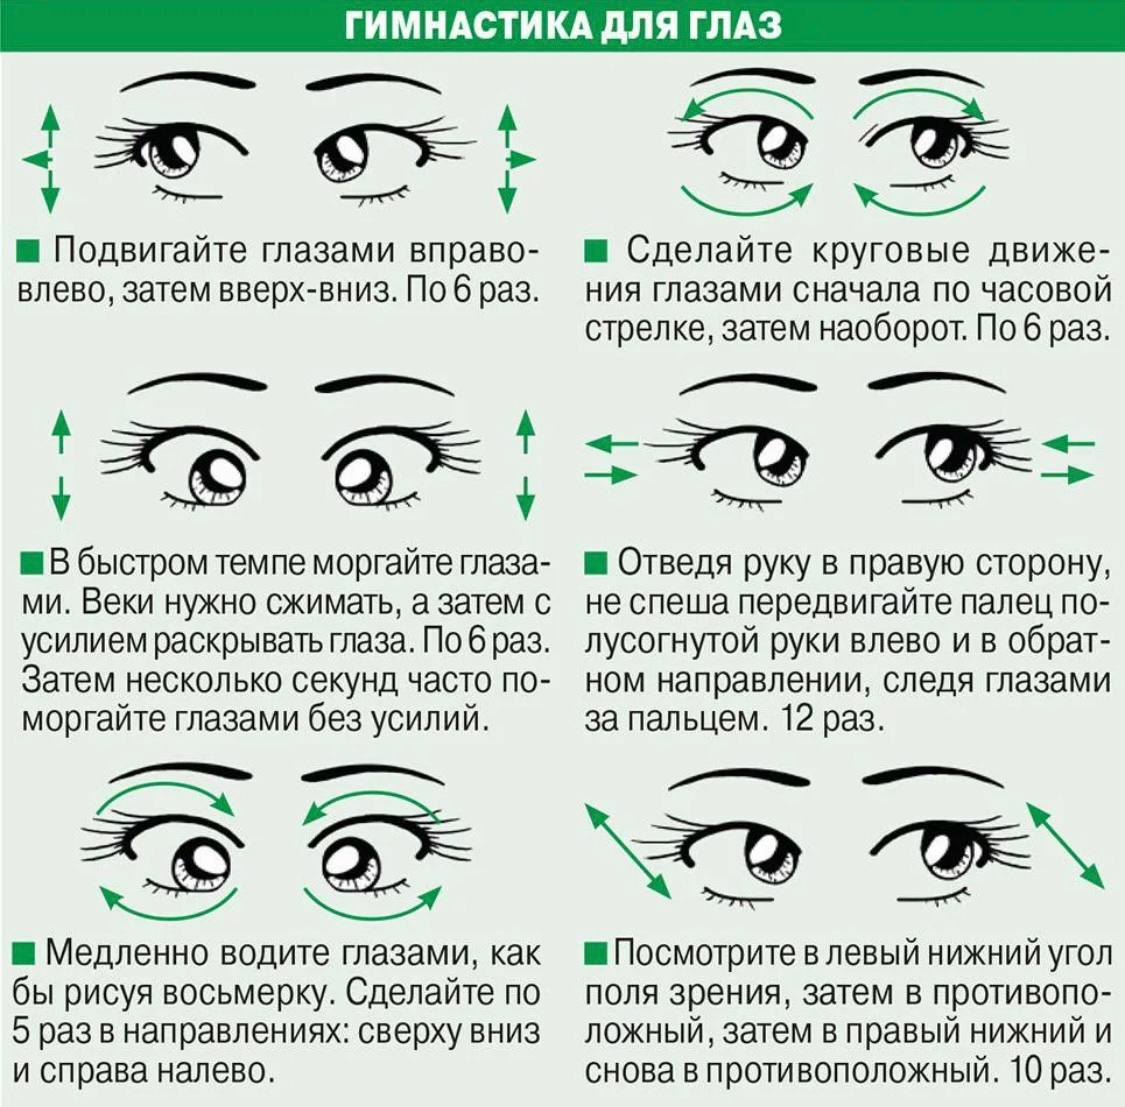 Возможно восстановить зрение. Гимнастика для глаз для улучшения зрения комплекс упражнений. Упражнения для глаз для улучшения зрения при близорукости. Упражнения для глаз для улучшения зрения при близорукости для детей. Комплекс упражнений для коррекции зрения 10 упражнений.